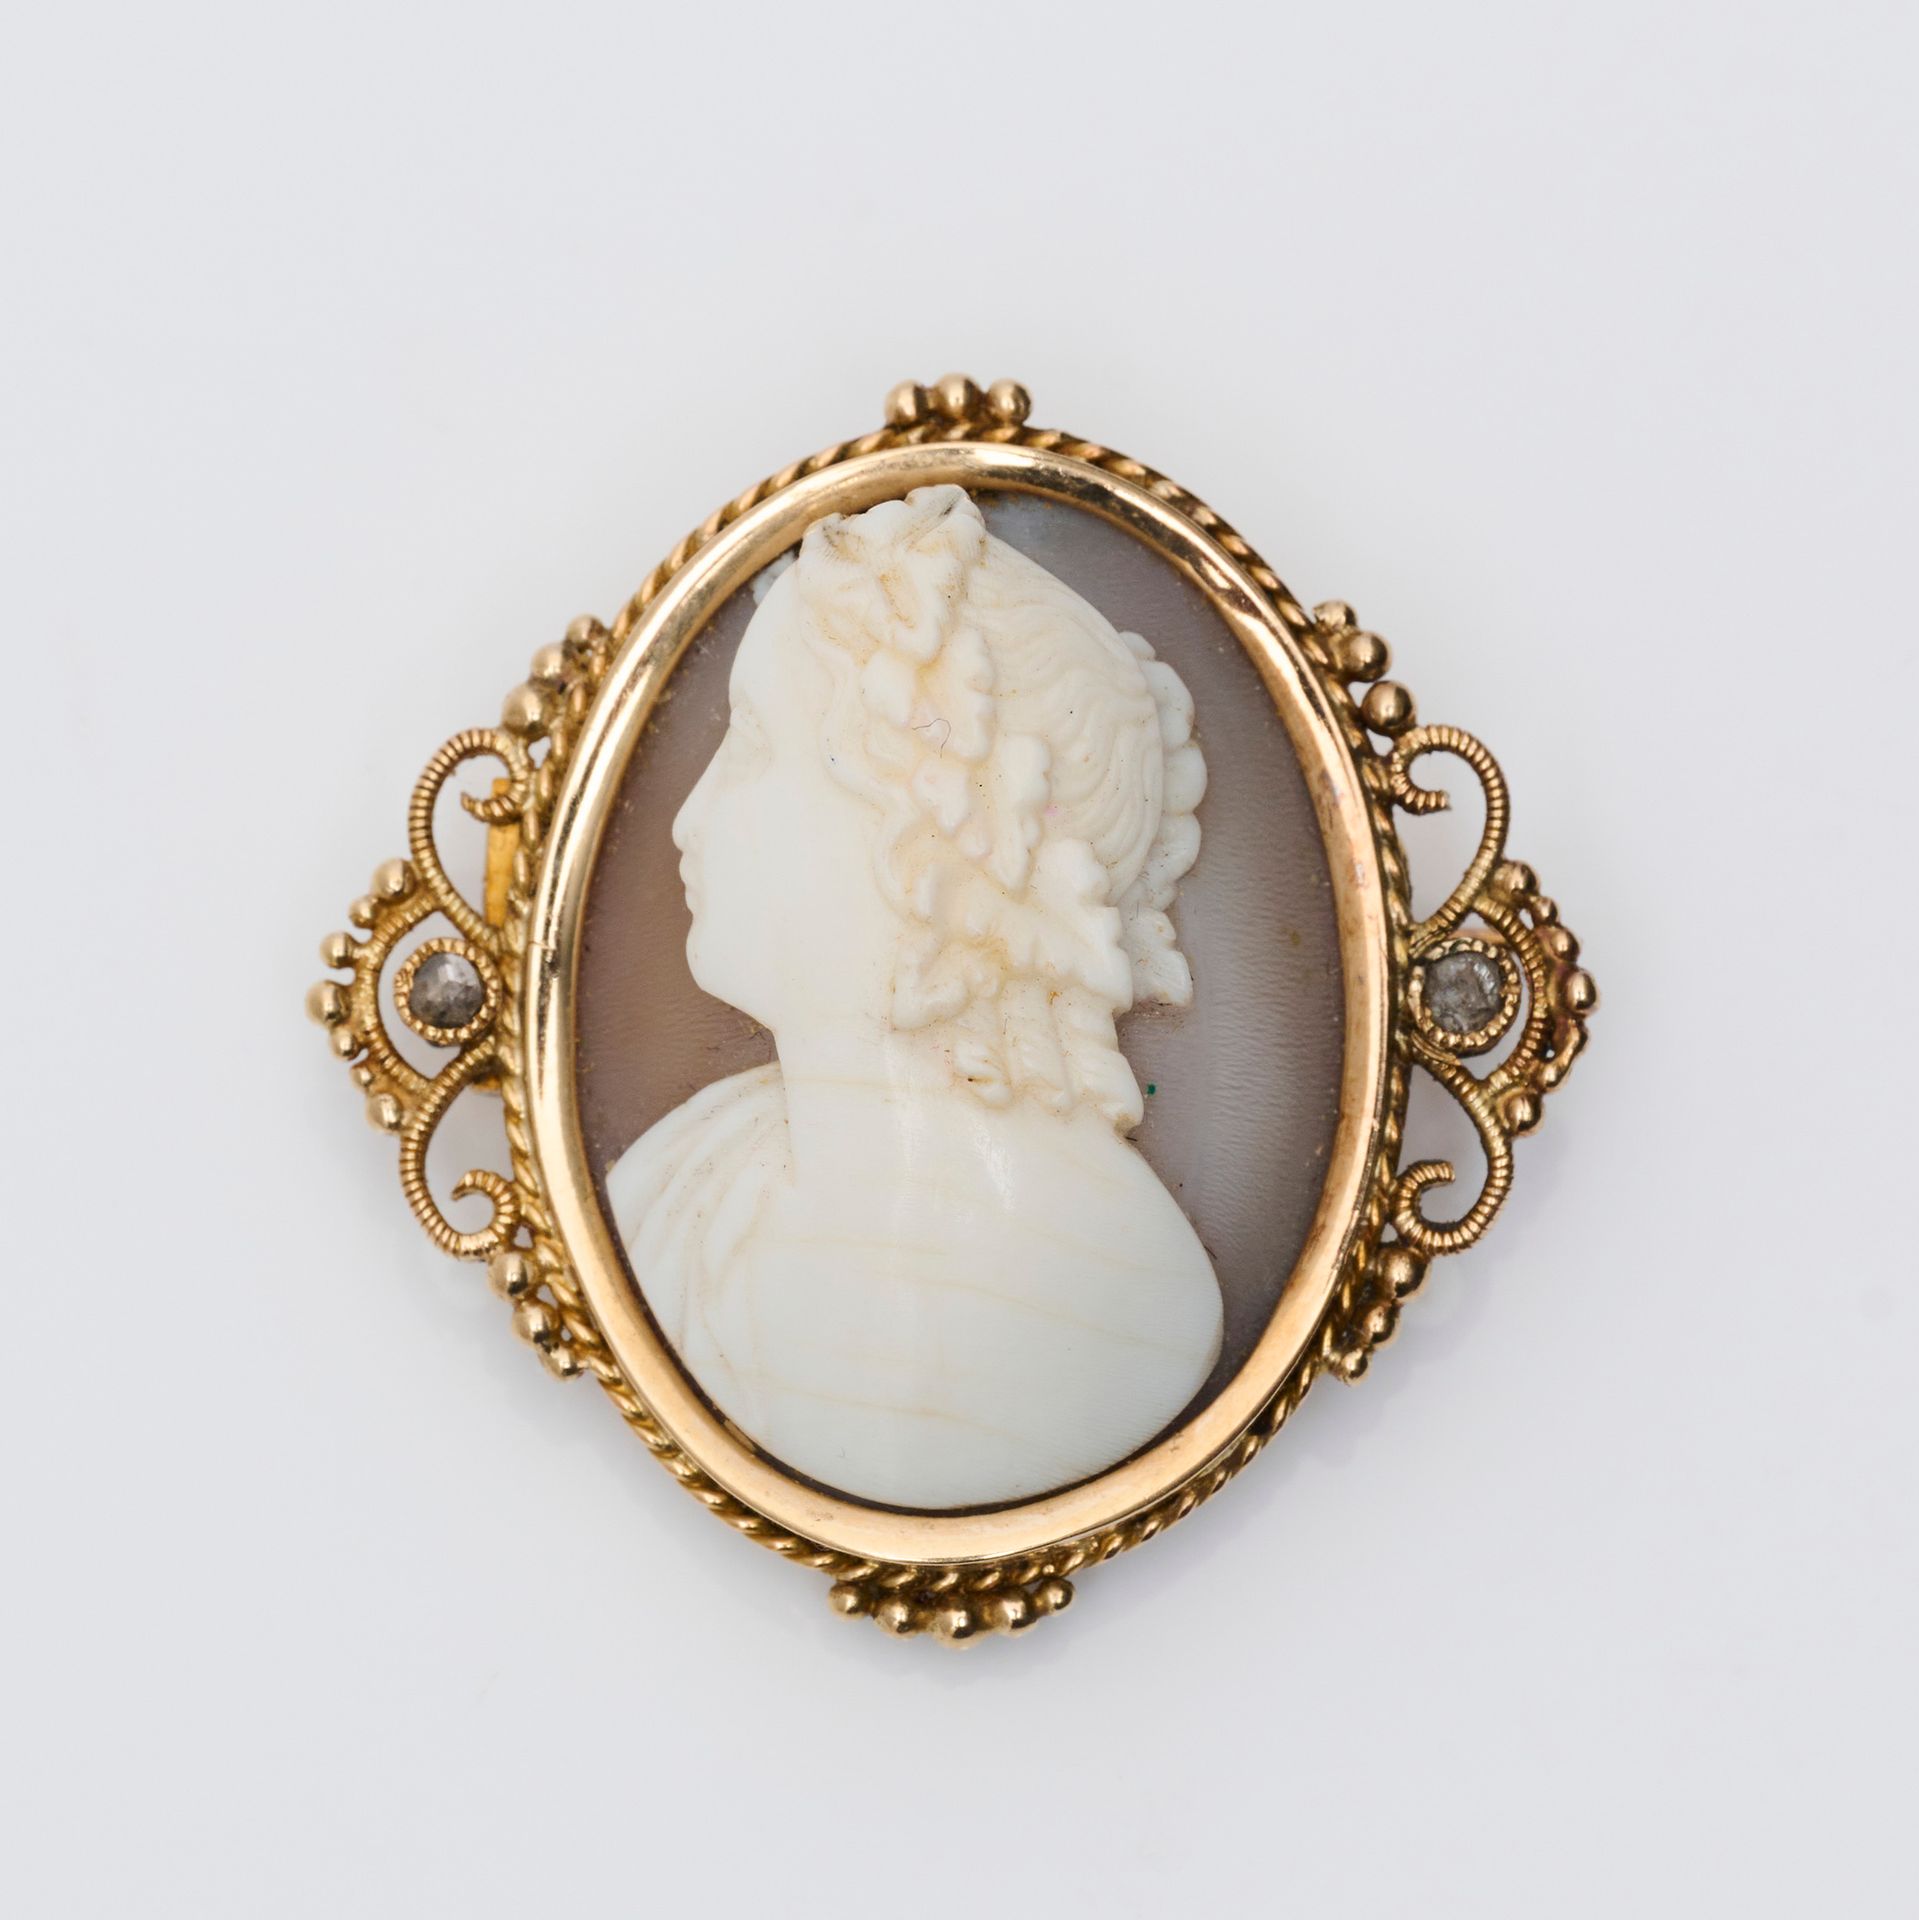 Broche 一枚18克拉黄金（750/000）椭圆形胸针，玛瑙上的浮雕代表一个女人的轮廓，镶嵌有卷轴装饰，并有小的玫瑰切割钻石。长度：3.1厘米 - 宽度：3&hellip;